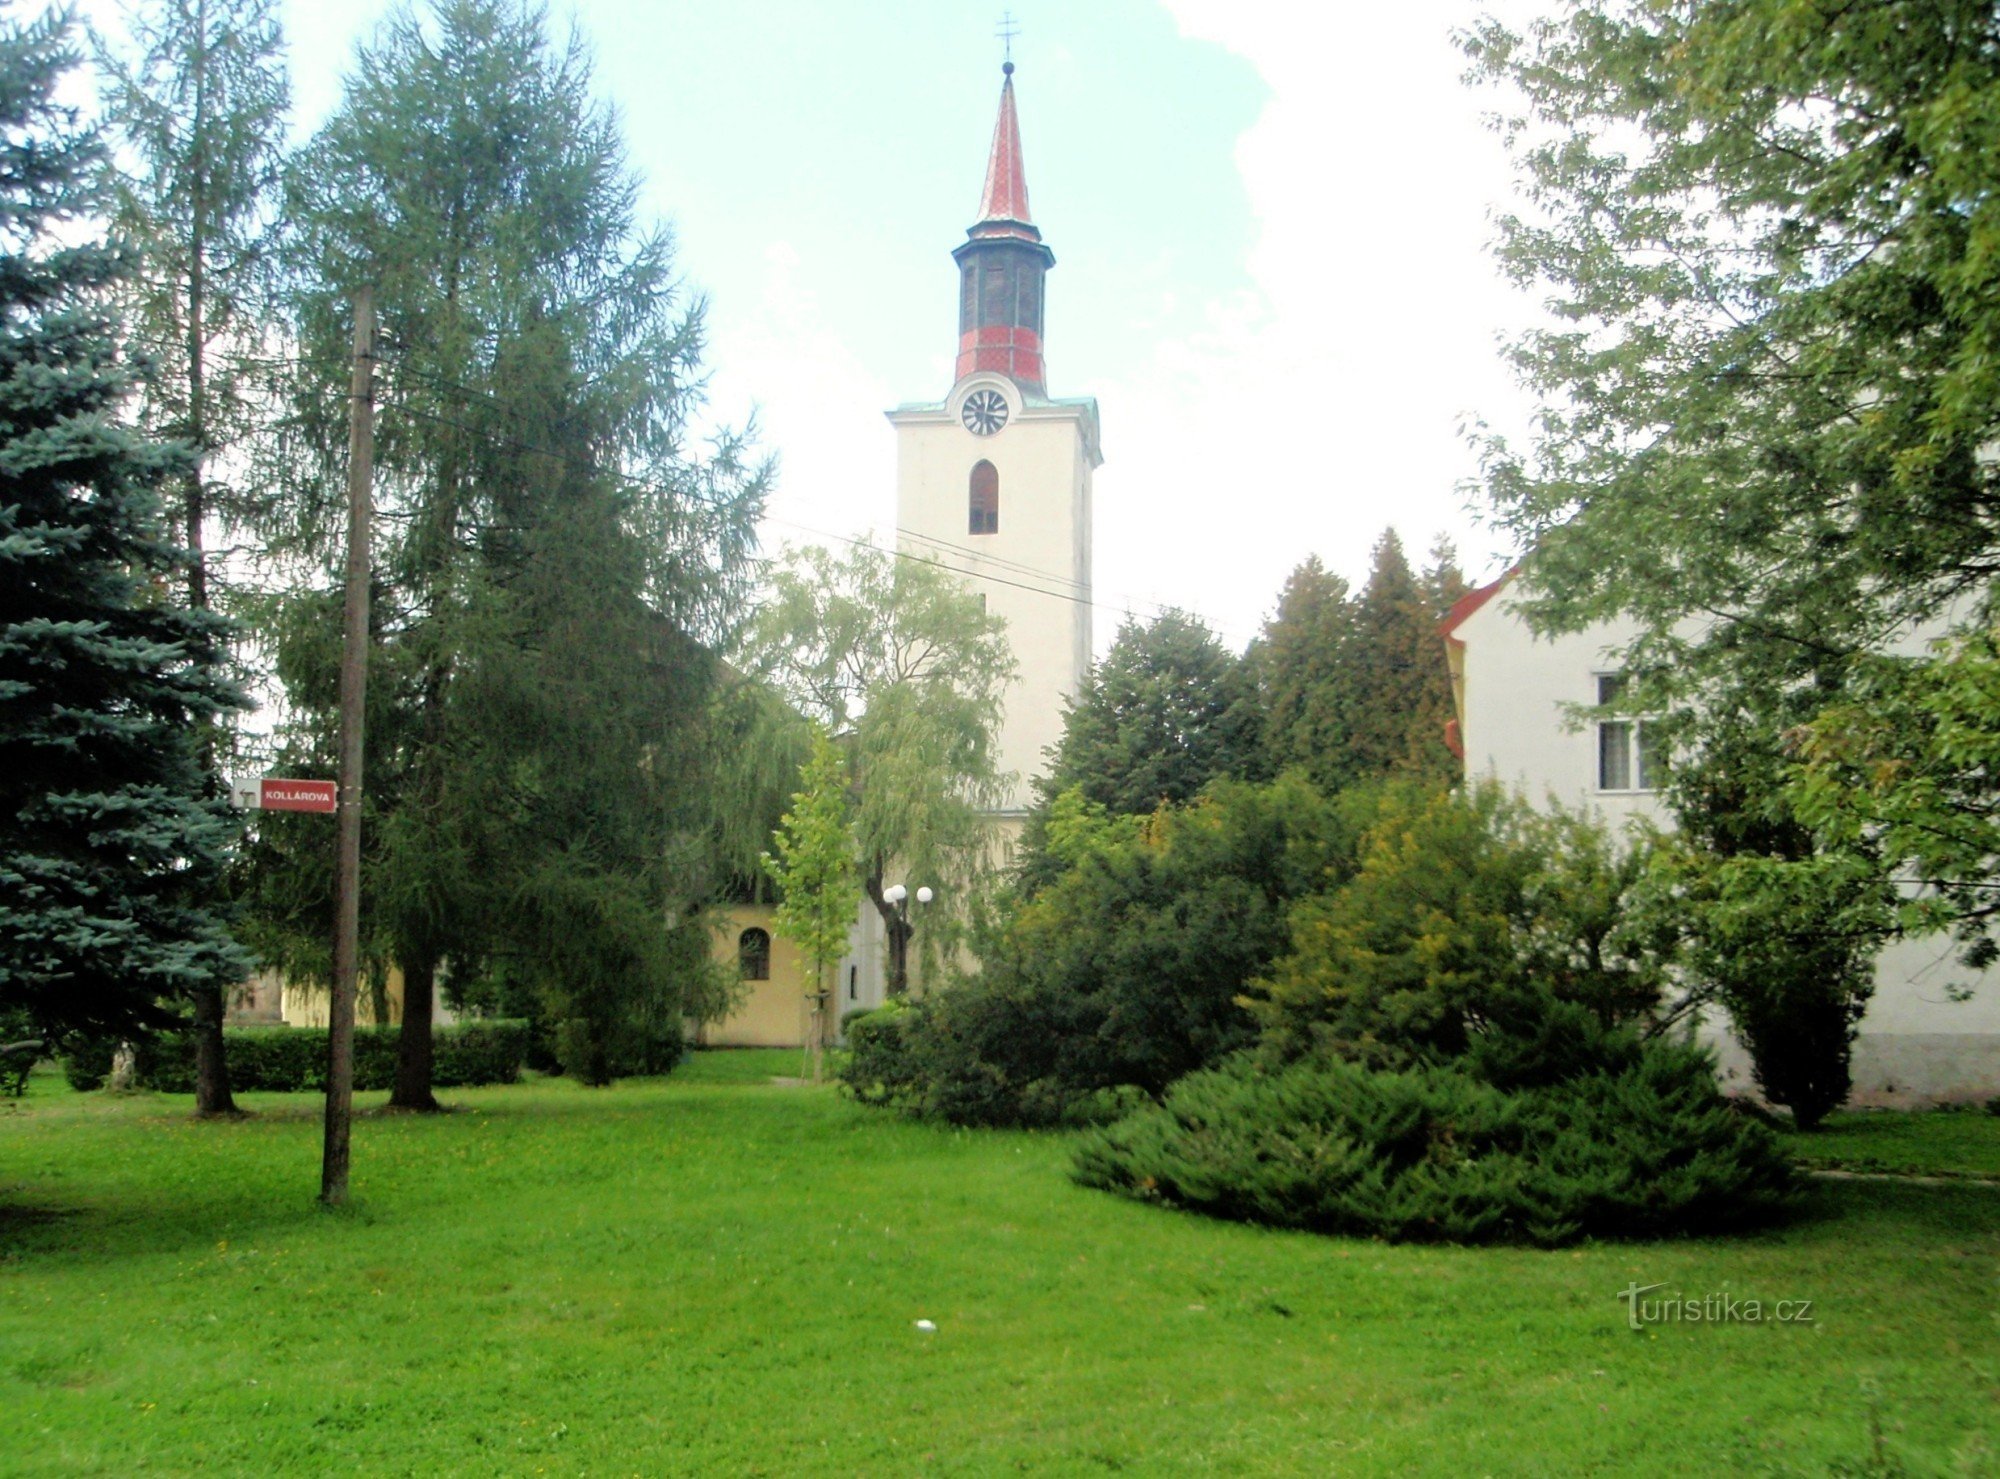 ツヴィコフ - 教会